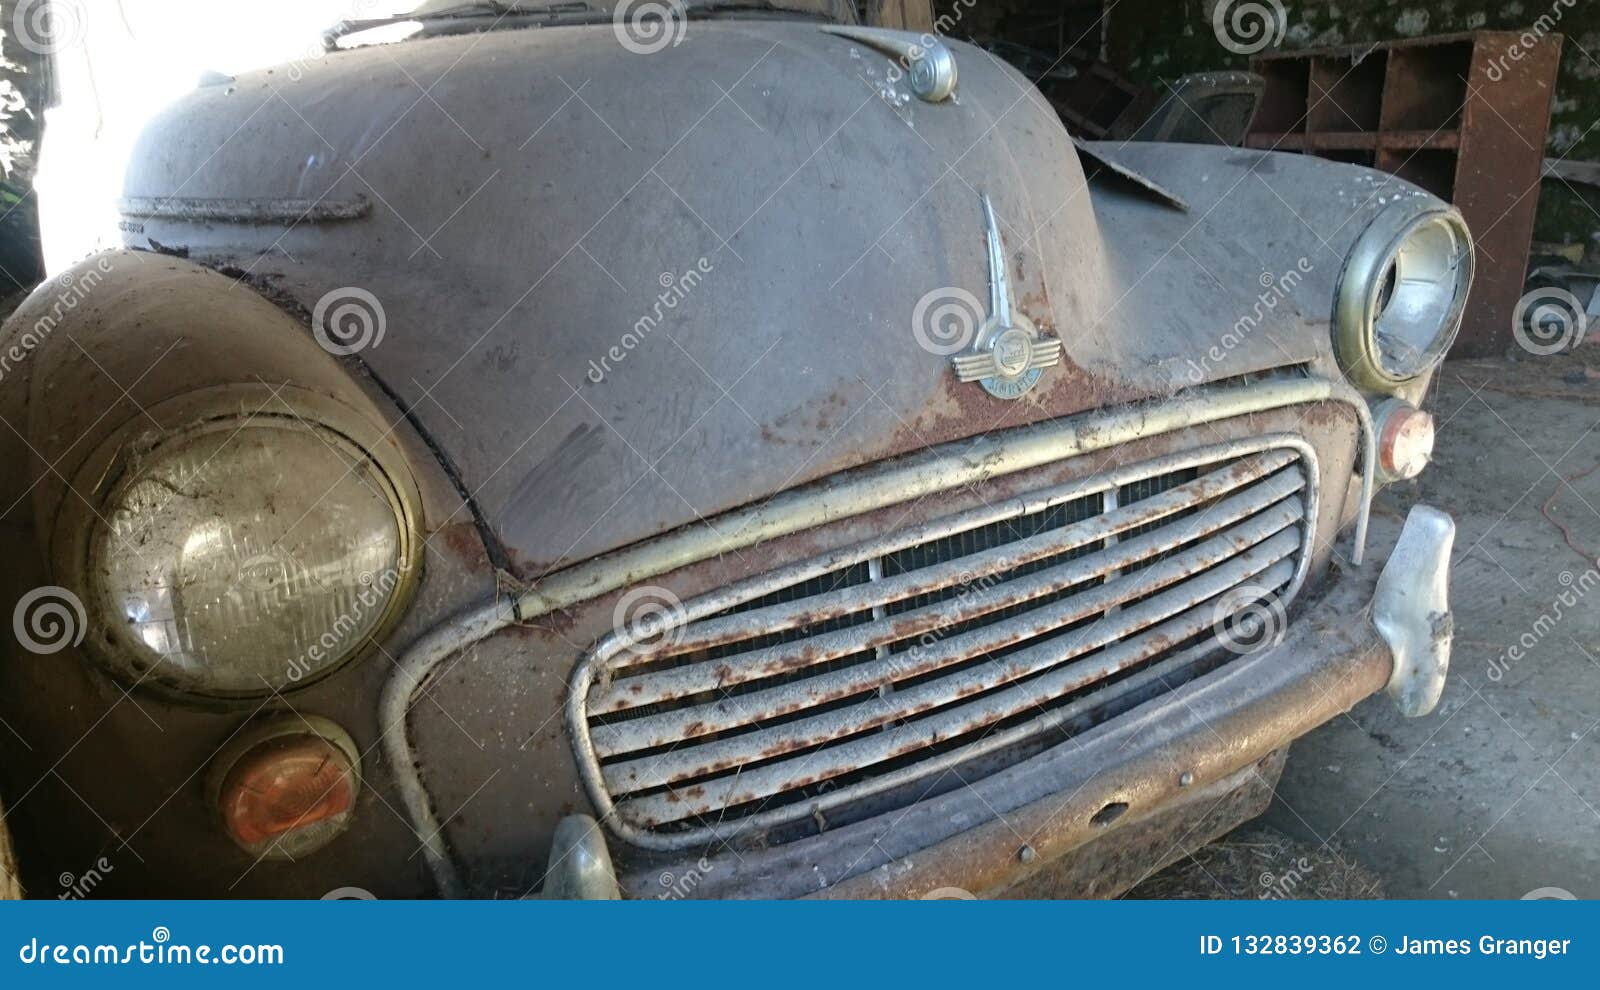 Vintage car barn finds